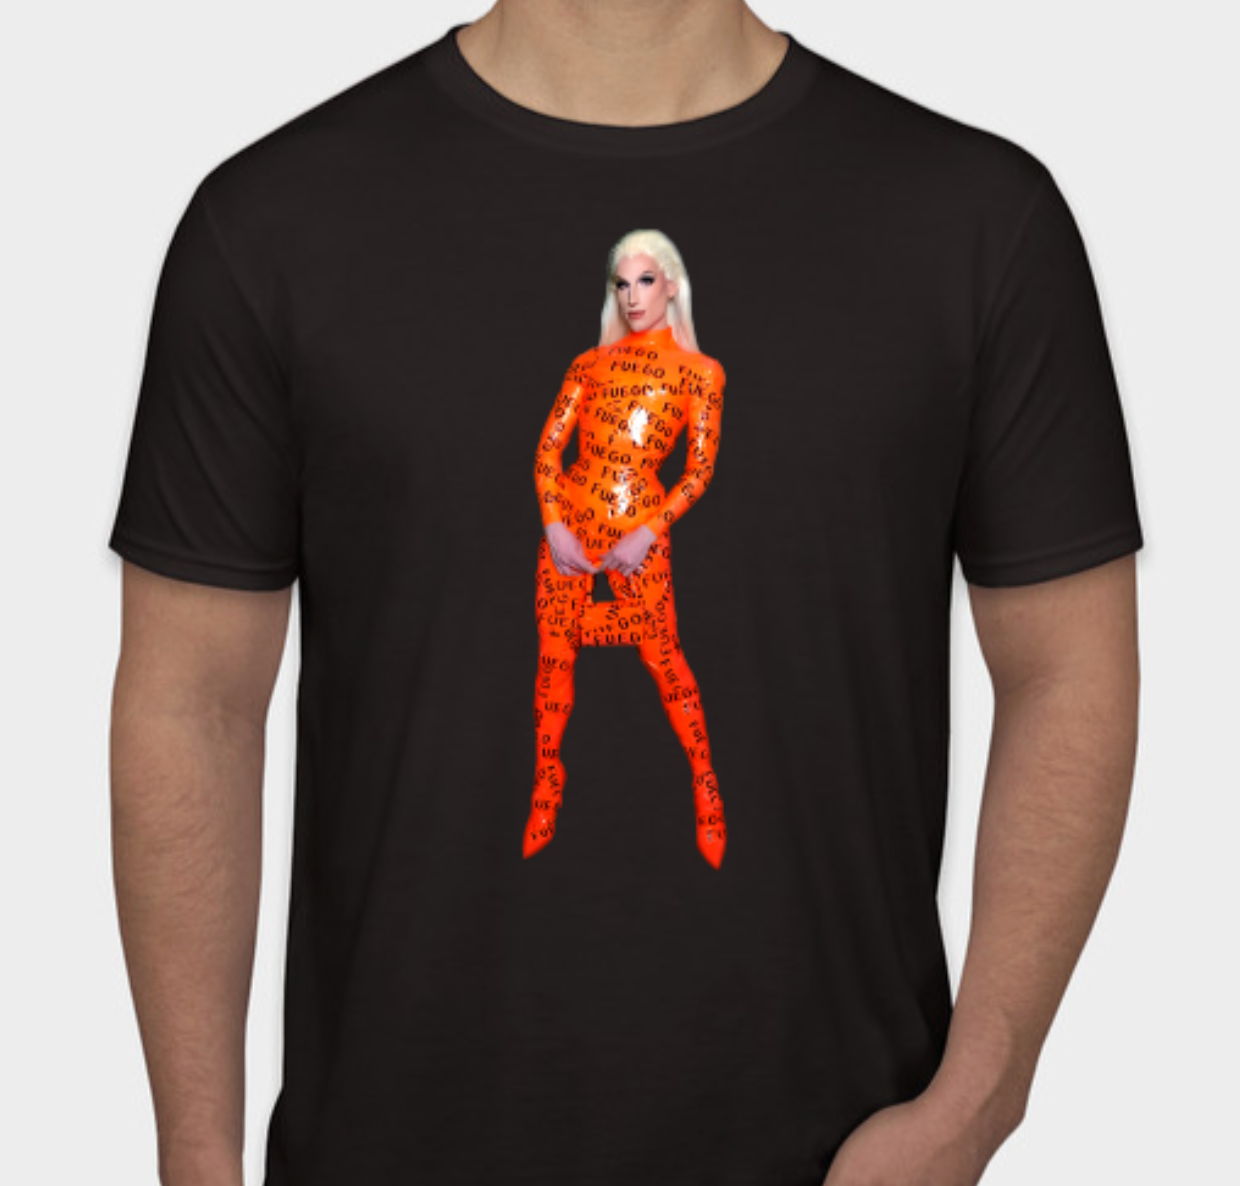 DD Fuego Orange Tape T-Shirt